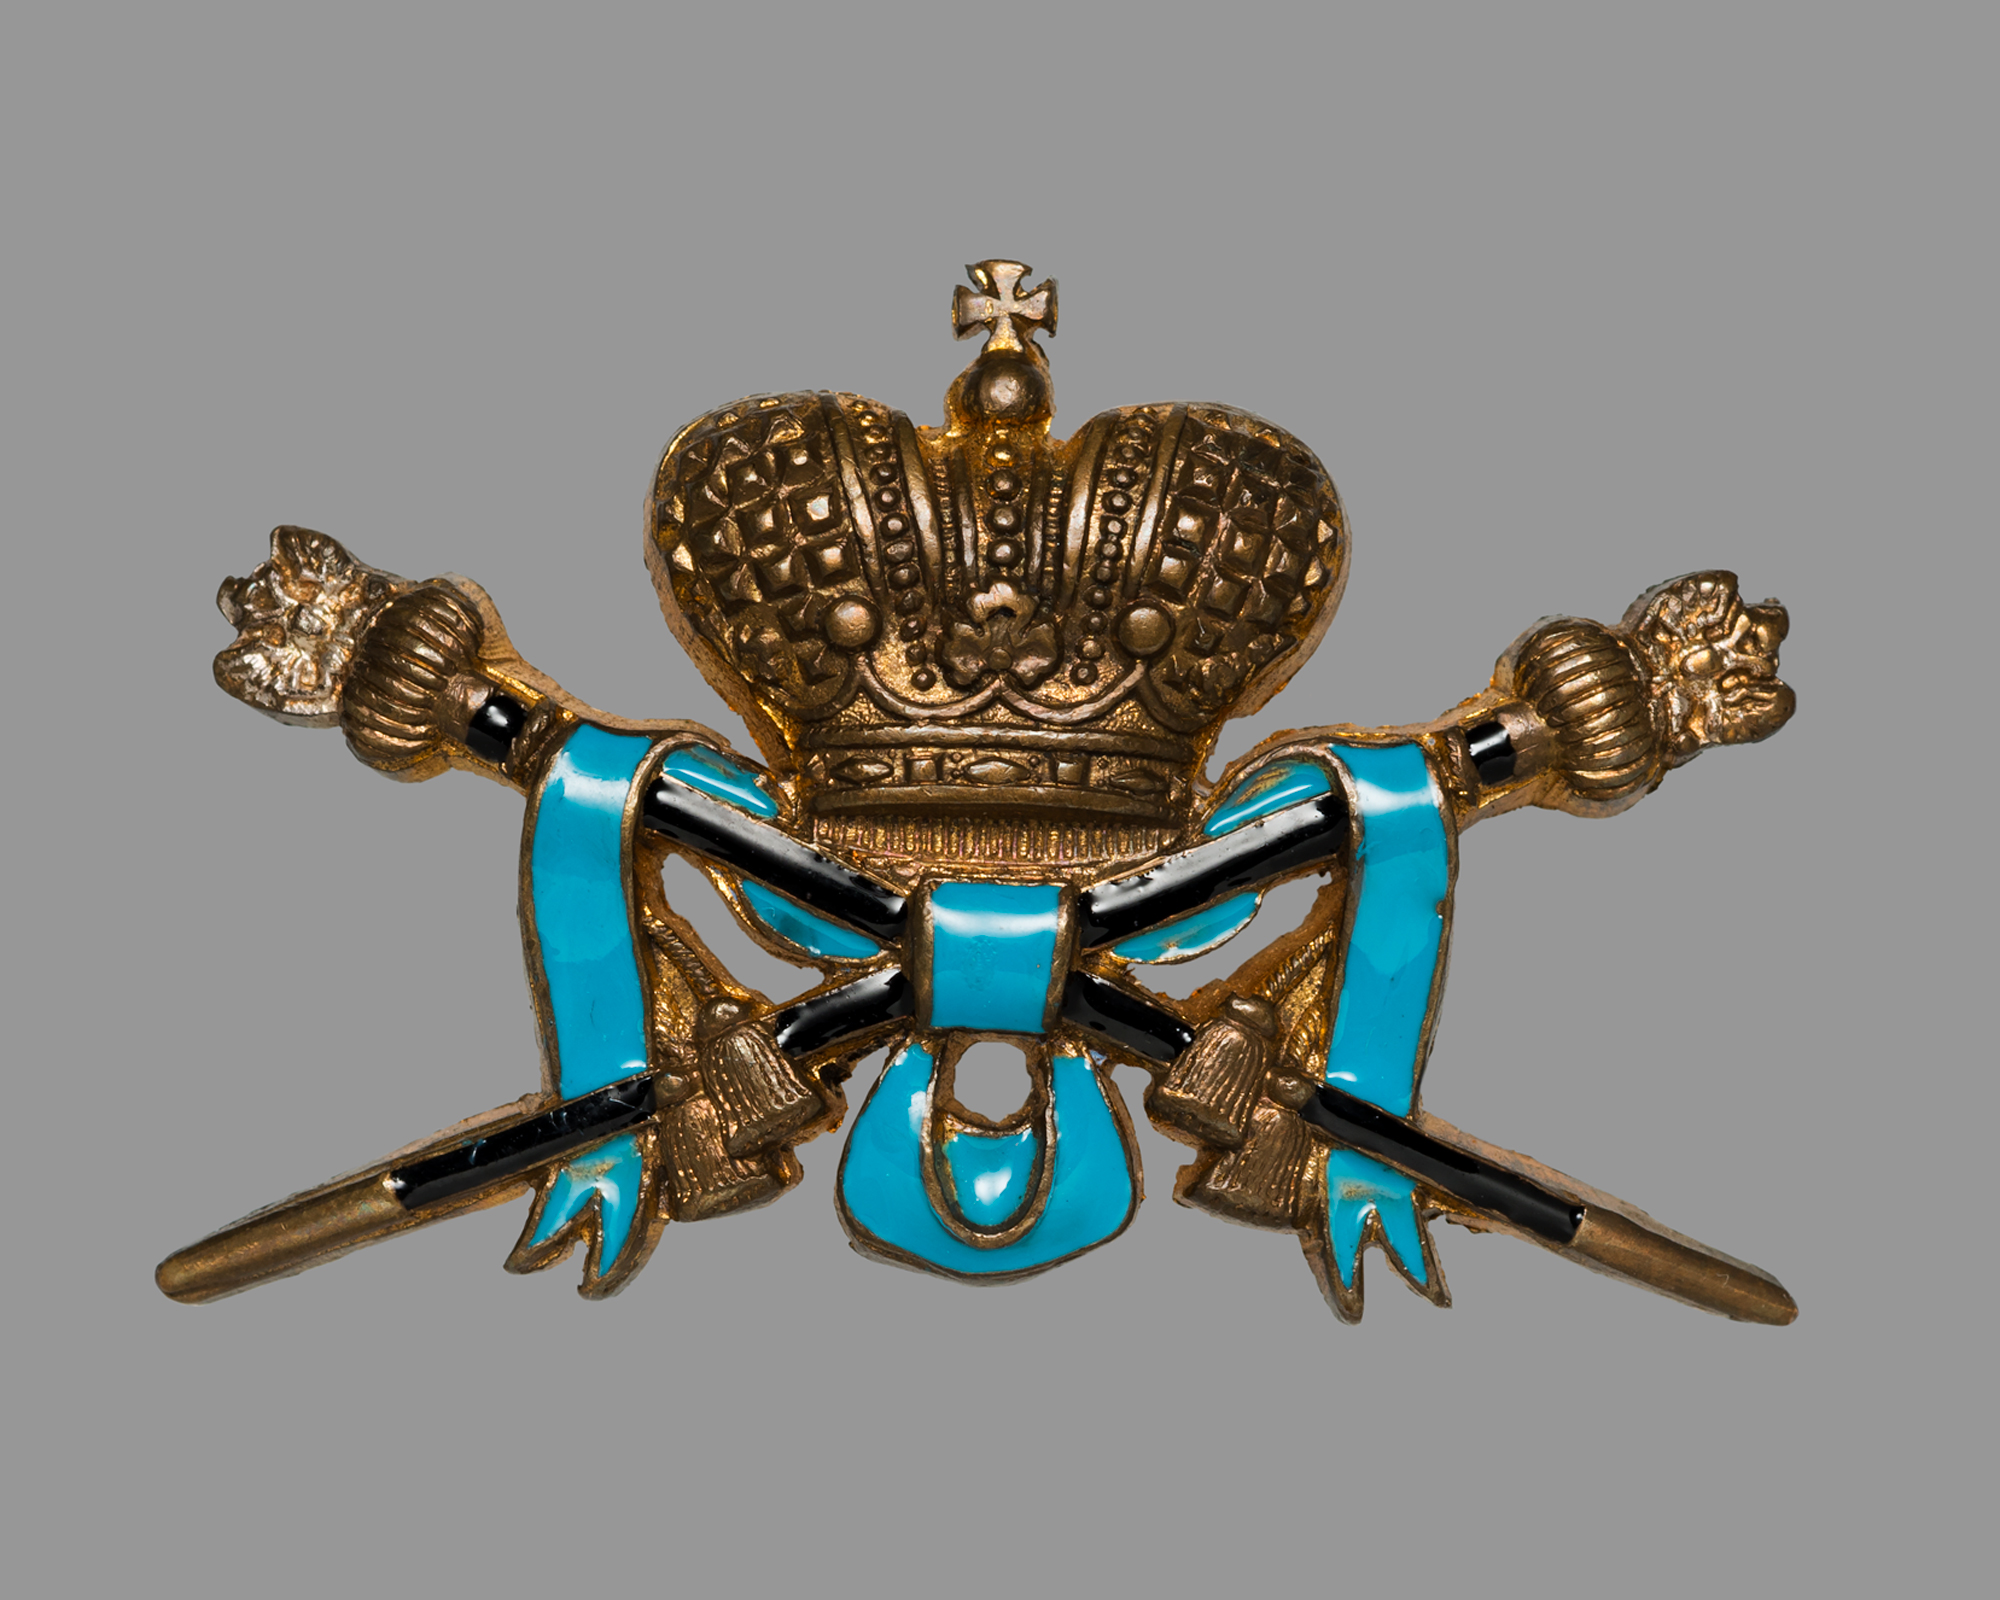 Знак Сводно-Гвардейского казачьего полка. Недрагоценный металл, эмаль